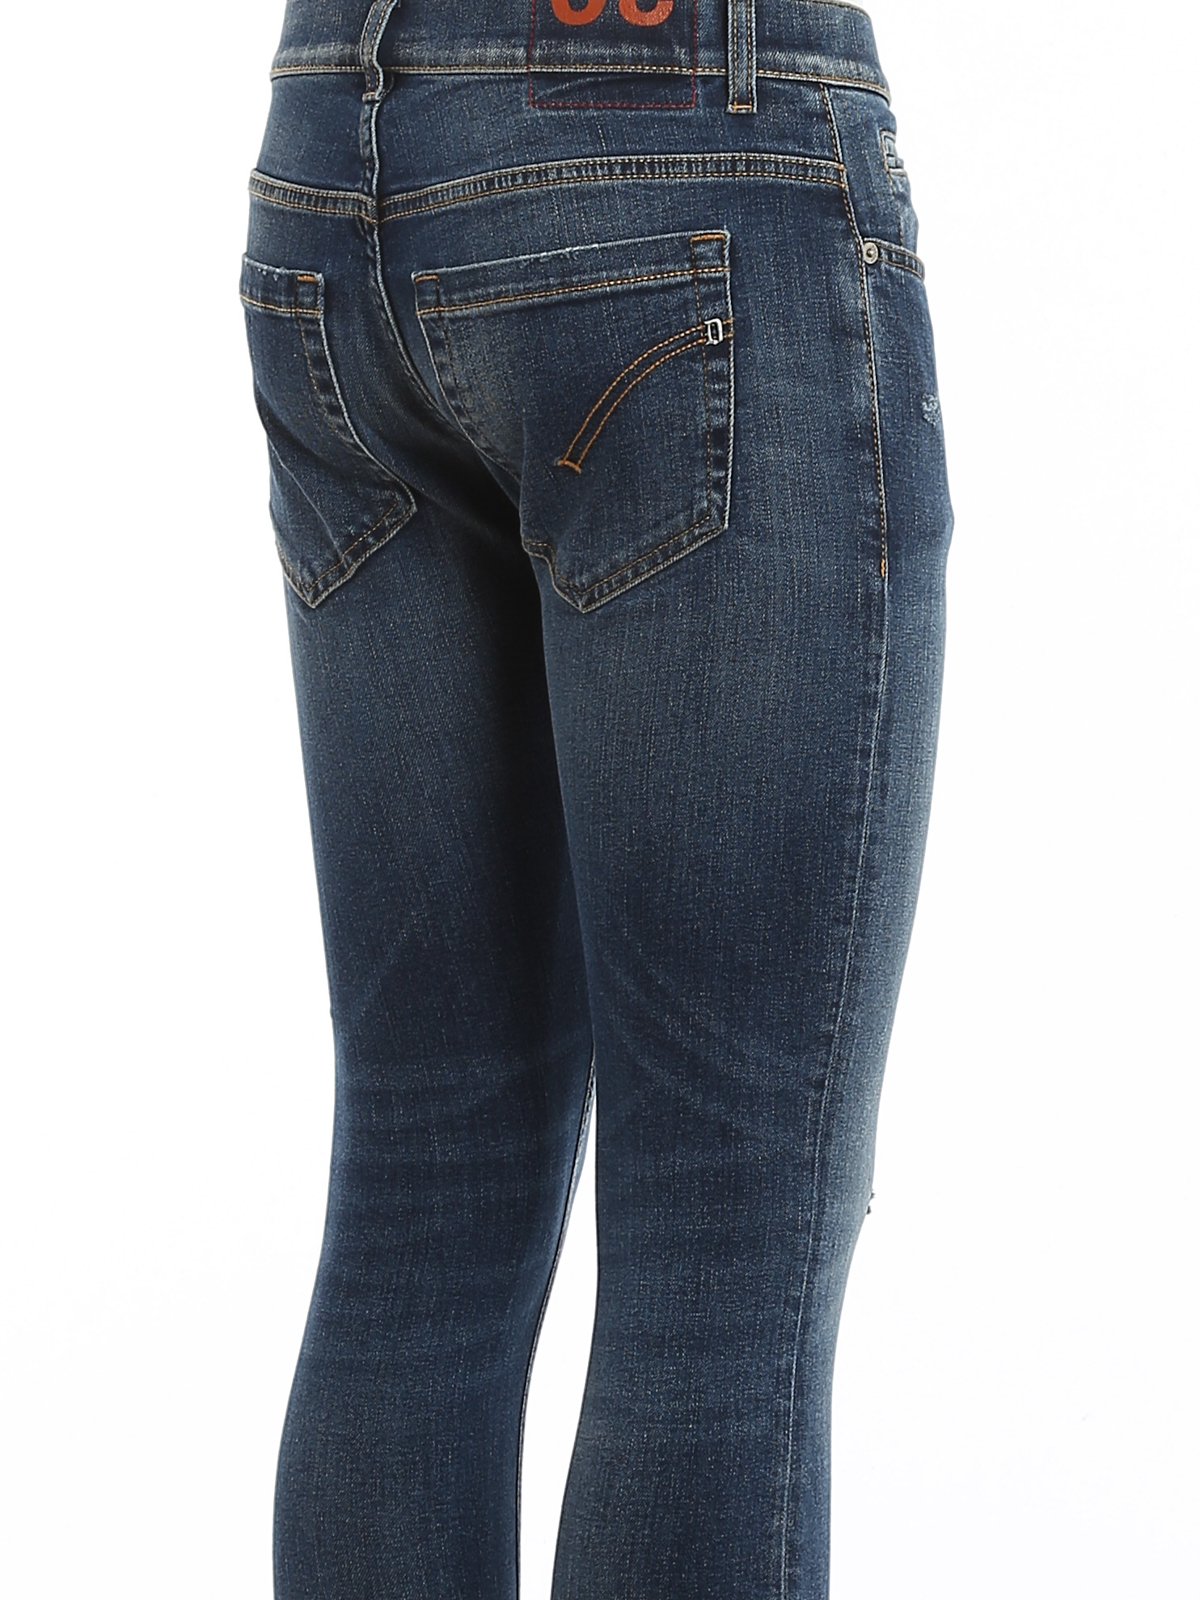 Vouwen Welvarend driehoek Skinny jeans Dondup - George jeans - UP232DSE282UAR4800 | iKRIX.com